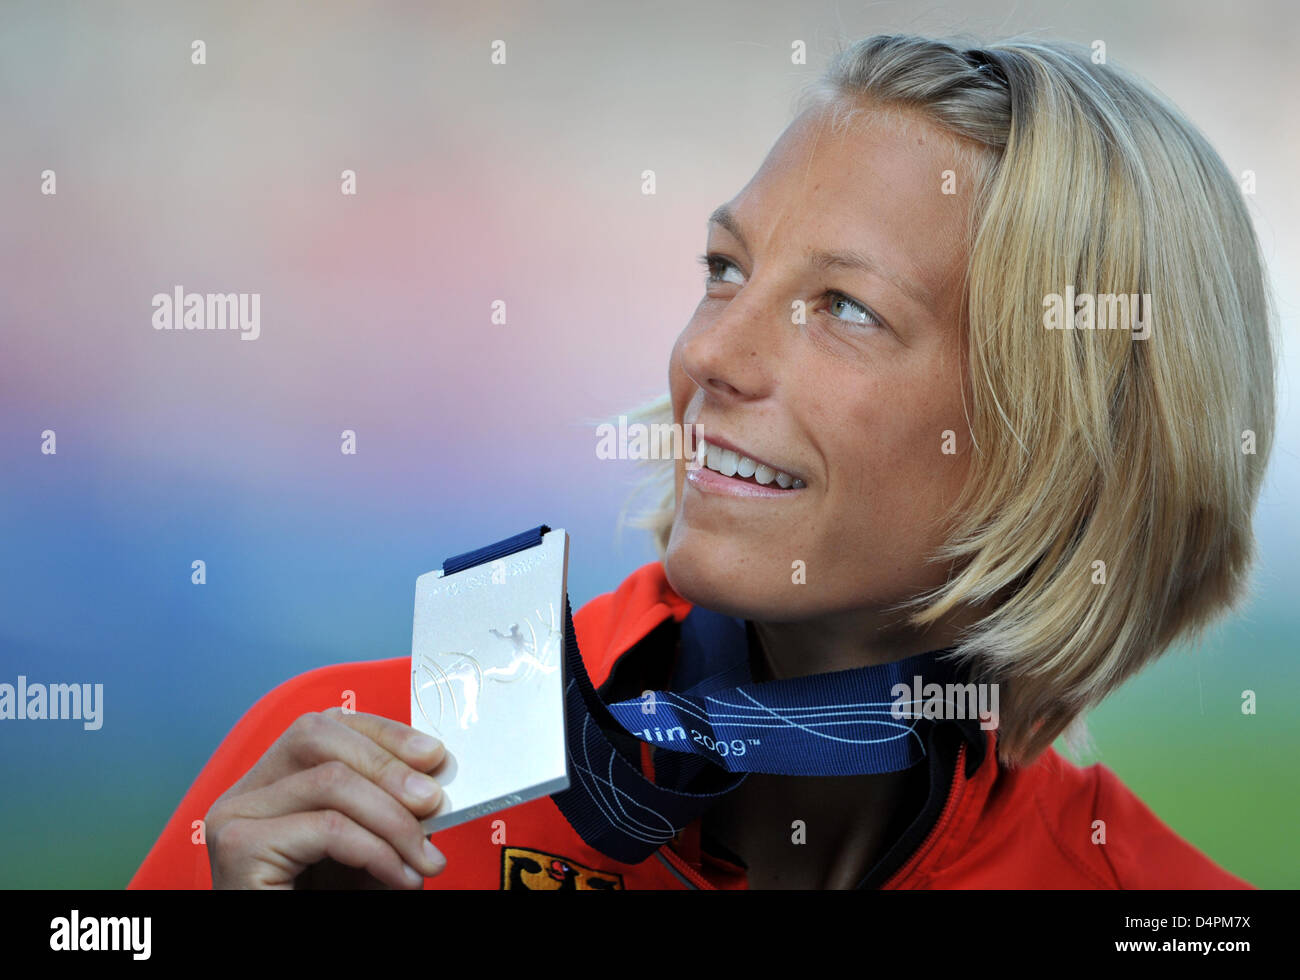 Alemán Jennifer Oeser muestra su medalla de plata durante la ceremonia de entrega de medallas Heptathlon en el XII Campeonato del Mundo IAAF de Atletismo, Berlín, Alemania, el 17 de agosto de 2009. Foto: Bernd Thyssen Foto de stock